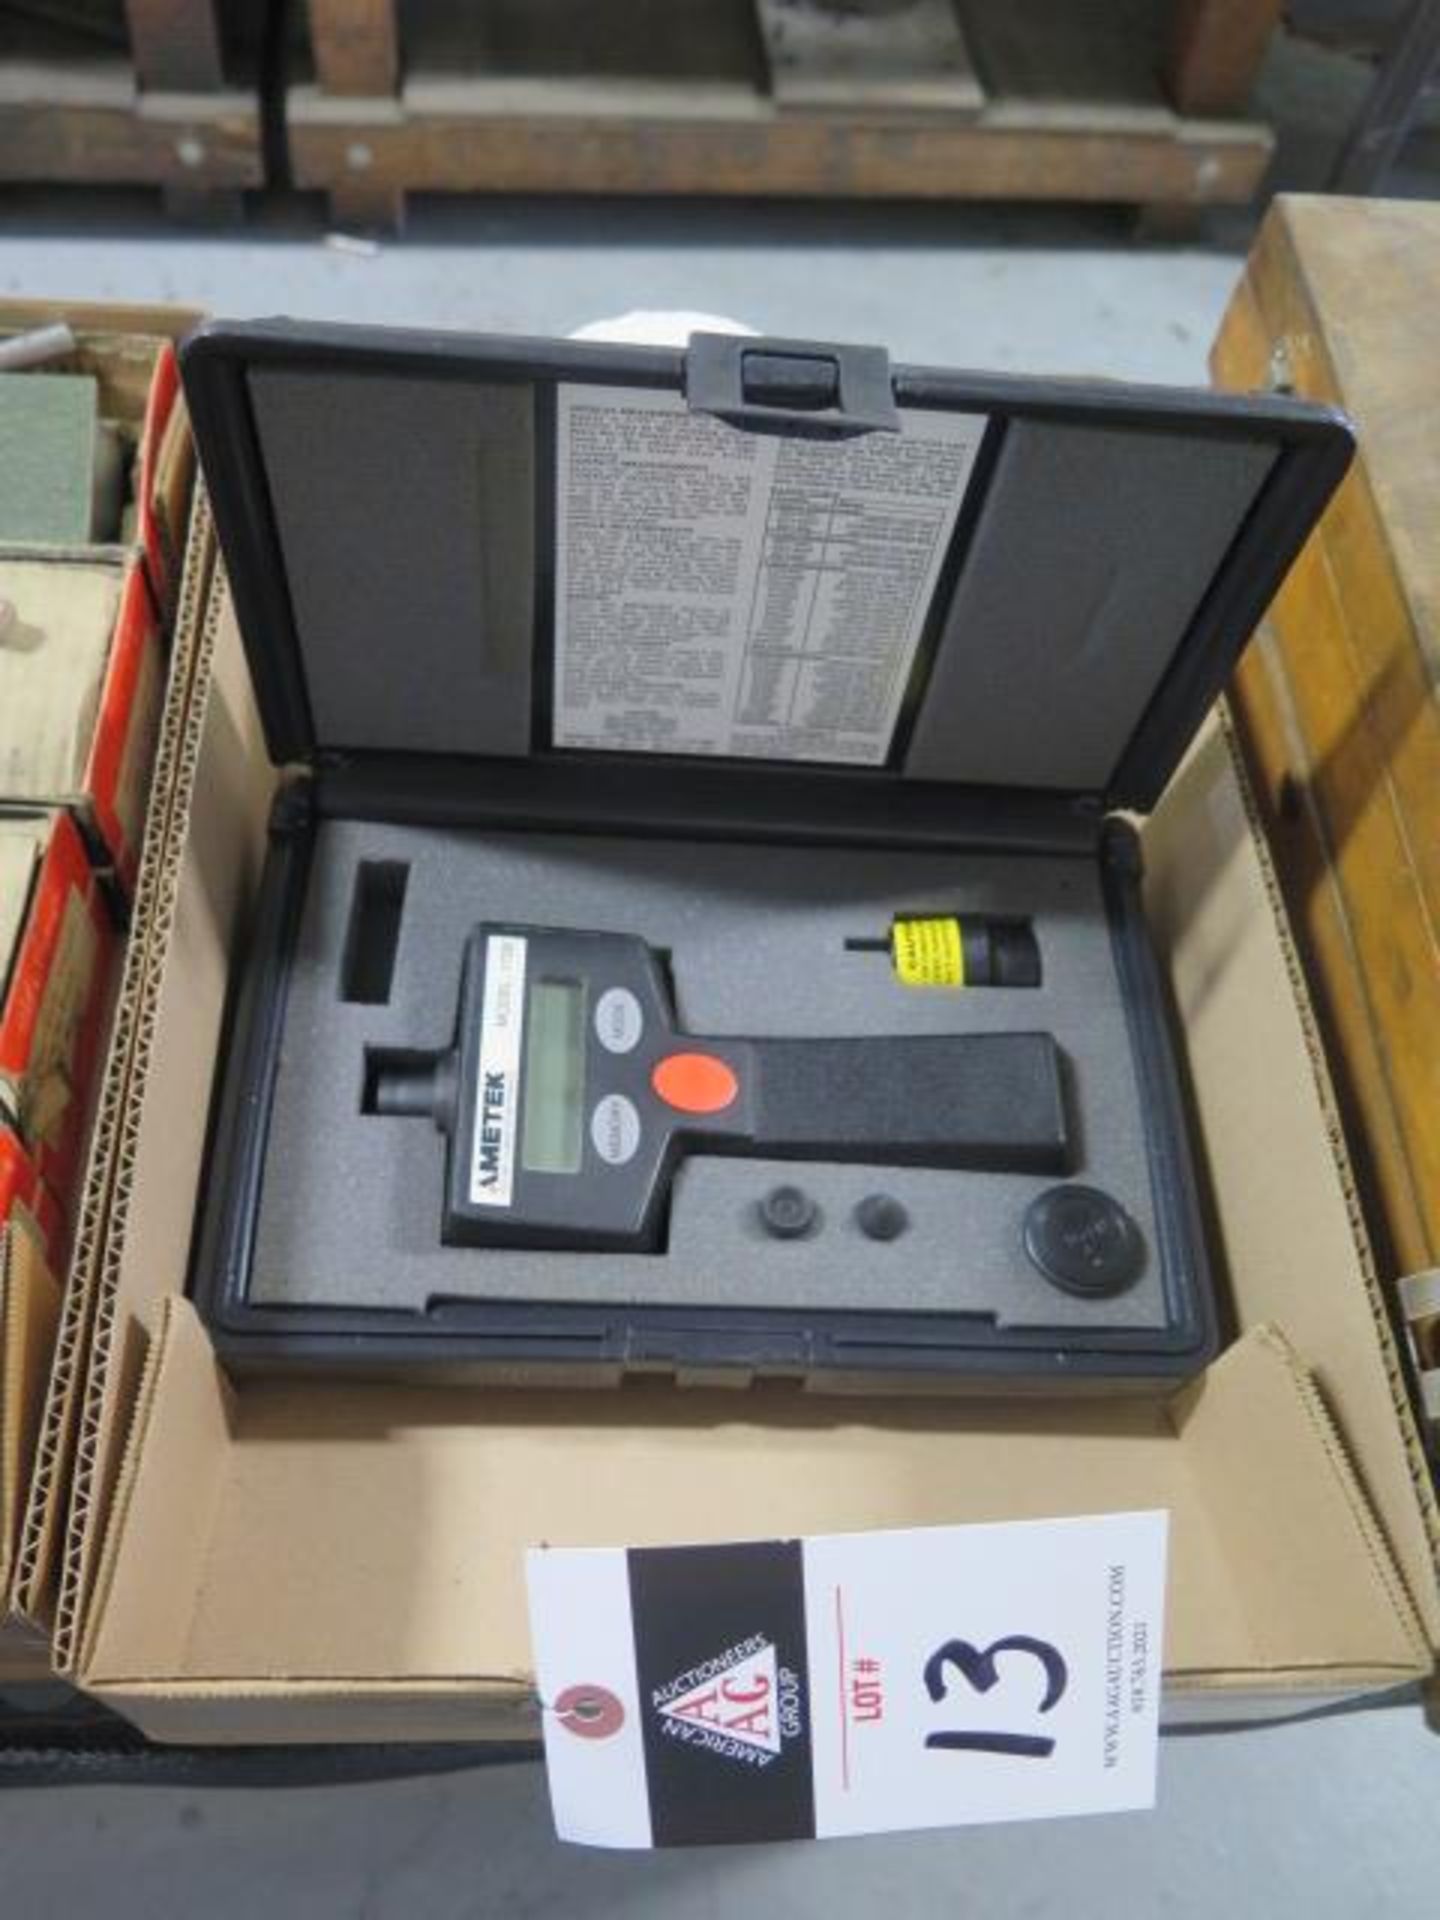 Ametek Digital Tachometer and Stewertt-Warner Tachometer (SOLD AS-IS - NO WARRANTY)